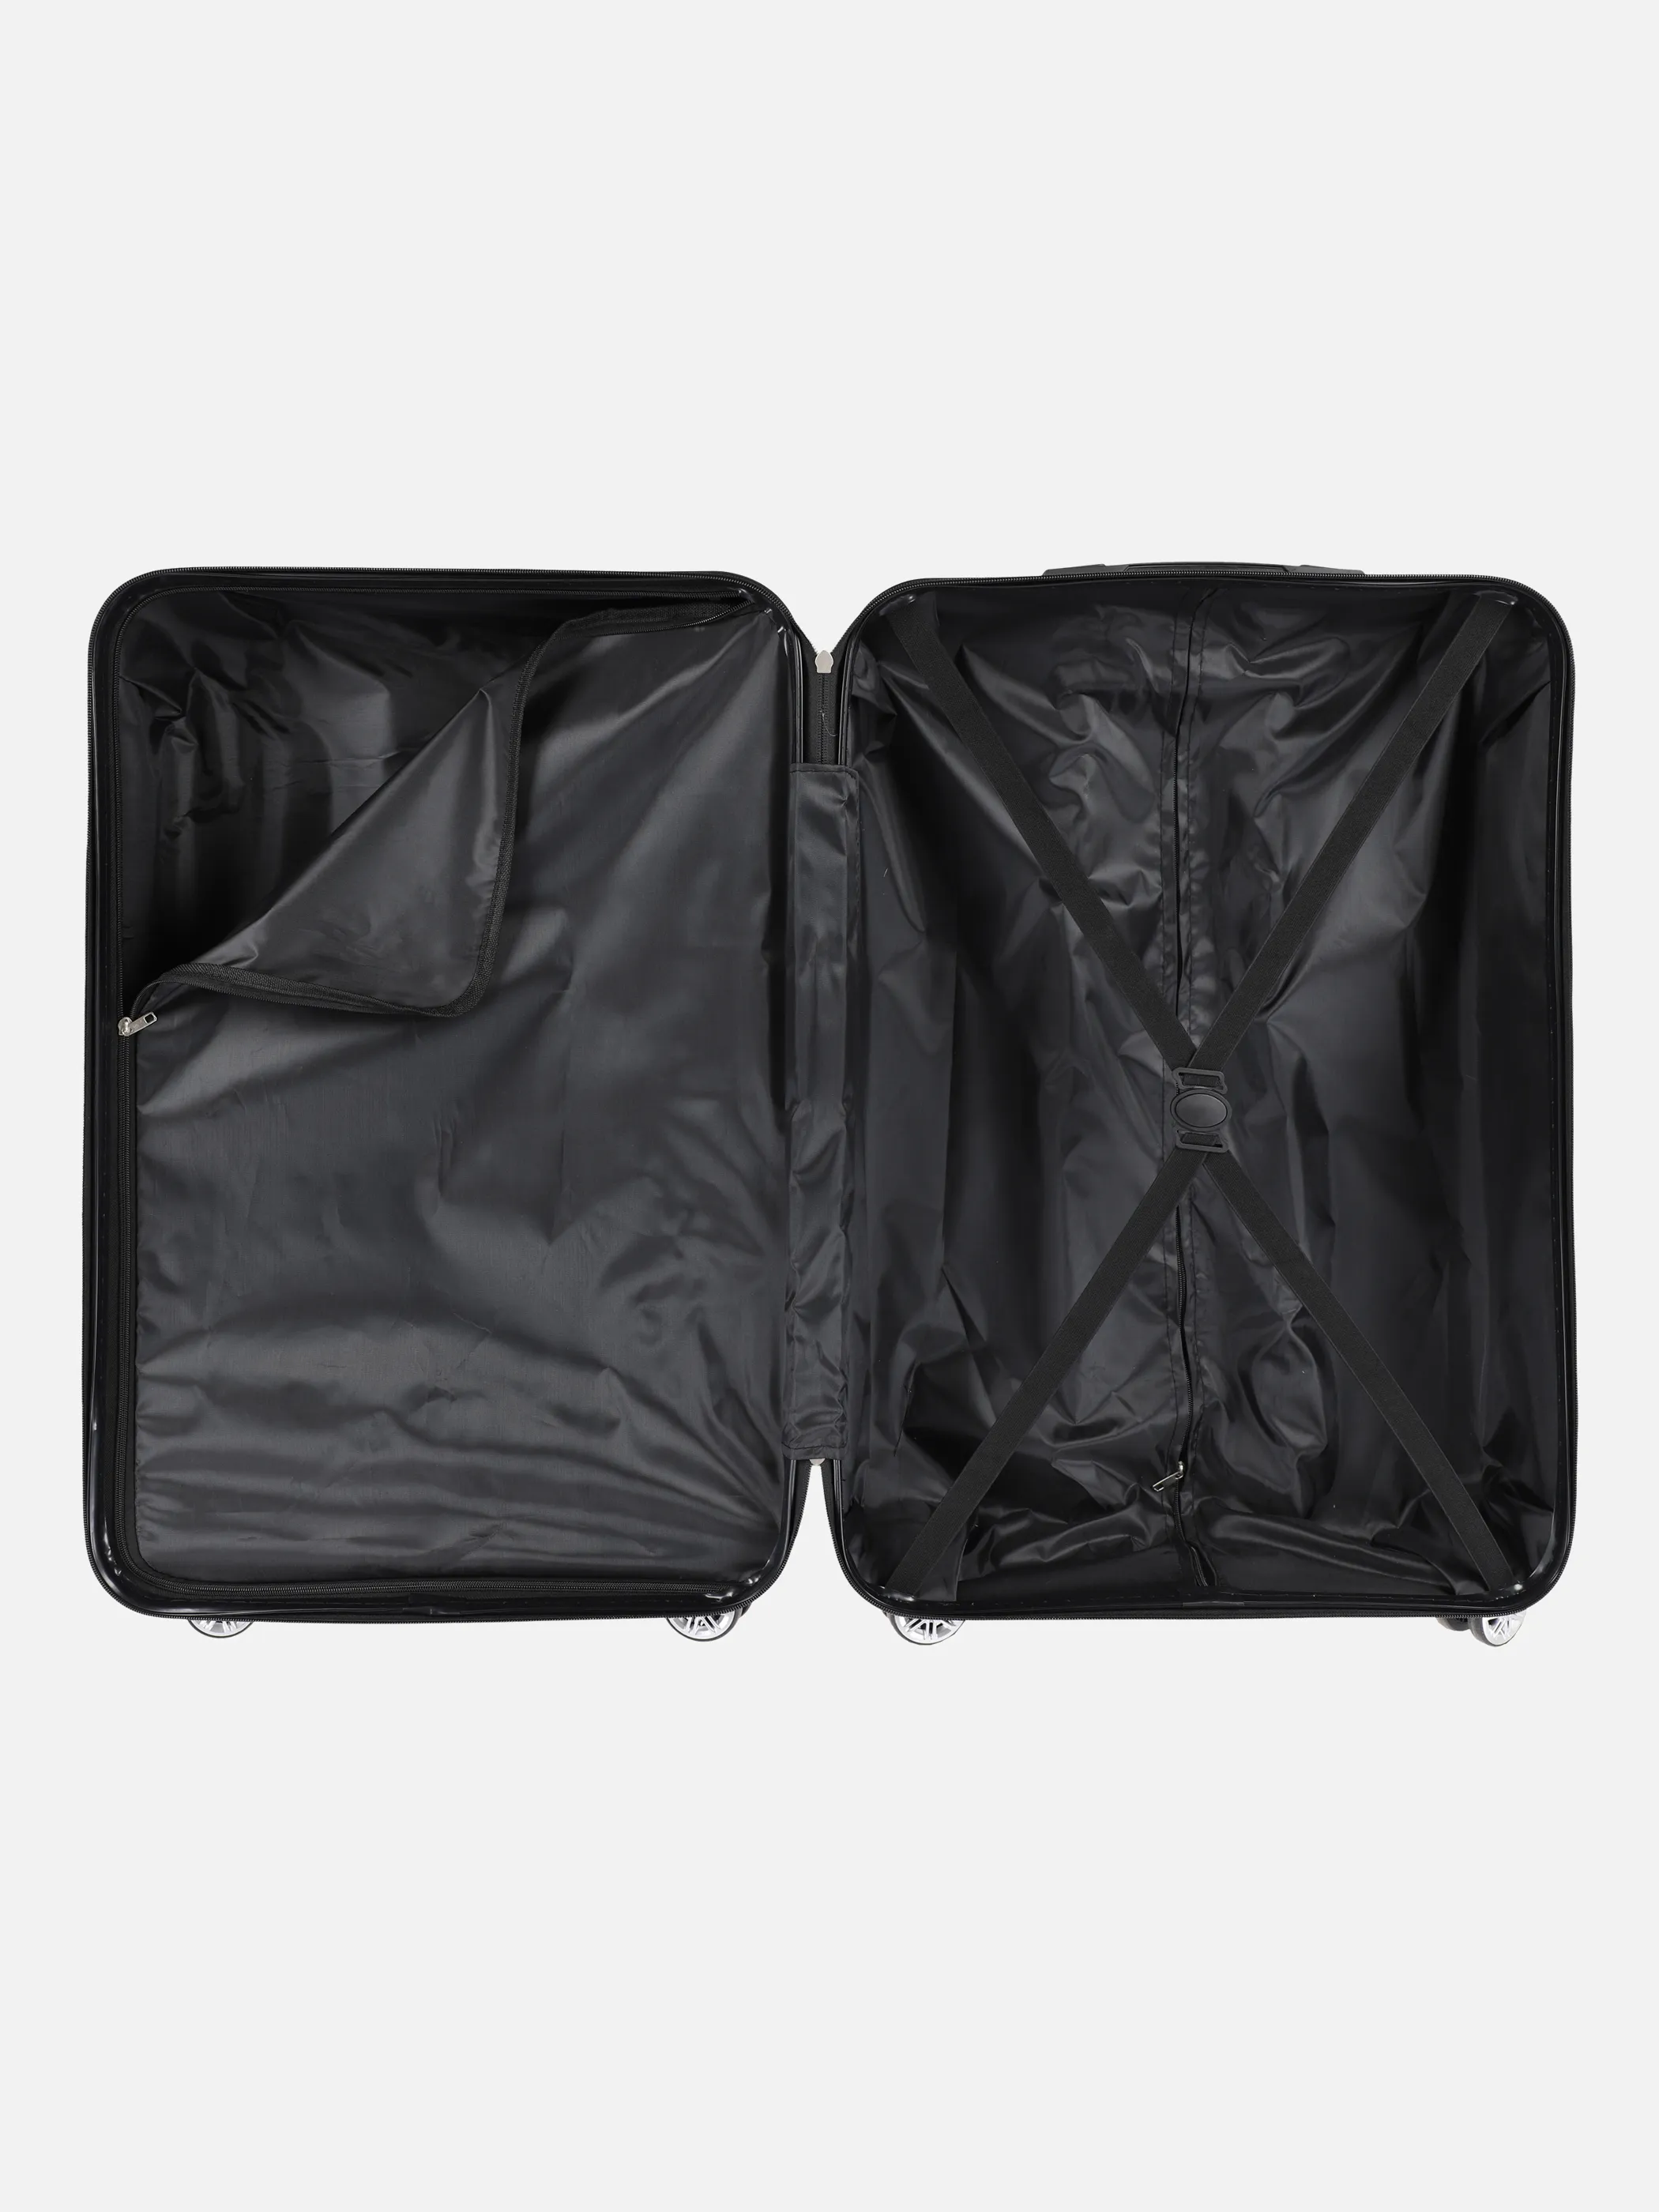 Koffer/Taschen Koffer Avalon 77x50x28 Grau 884544 ANTHRA 3